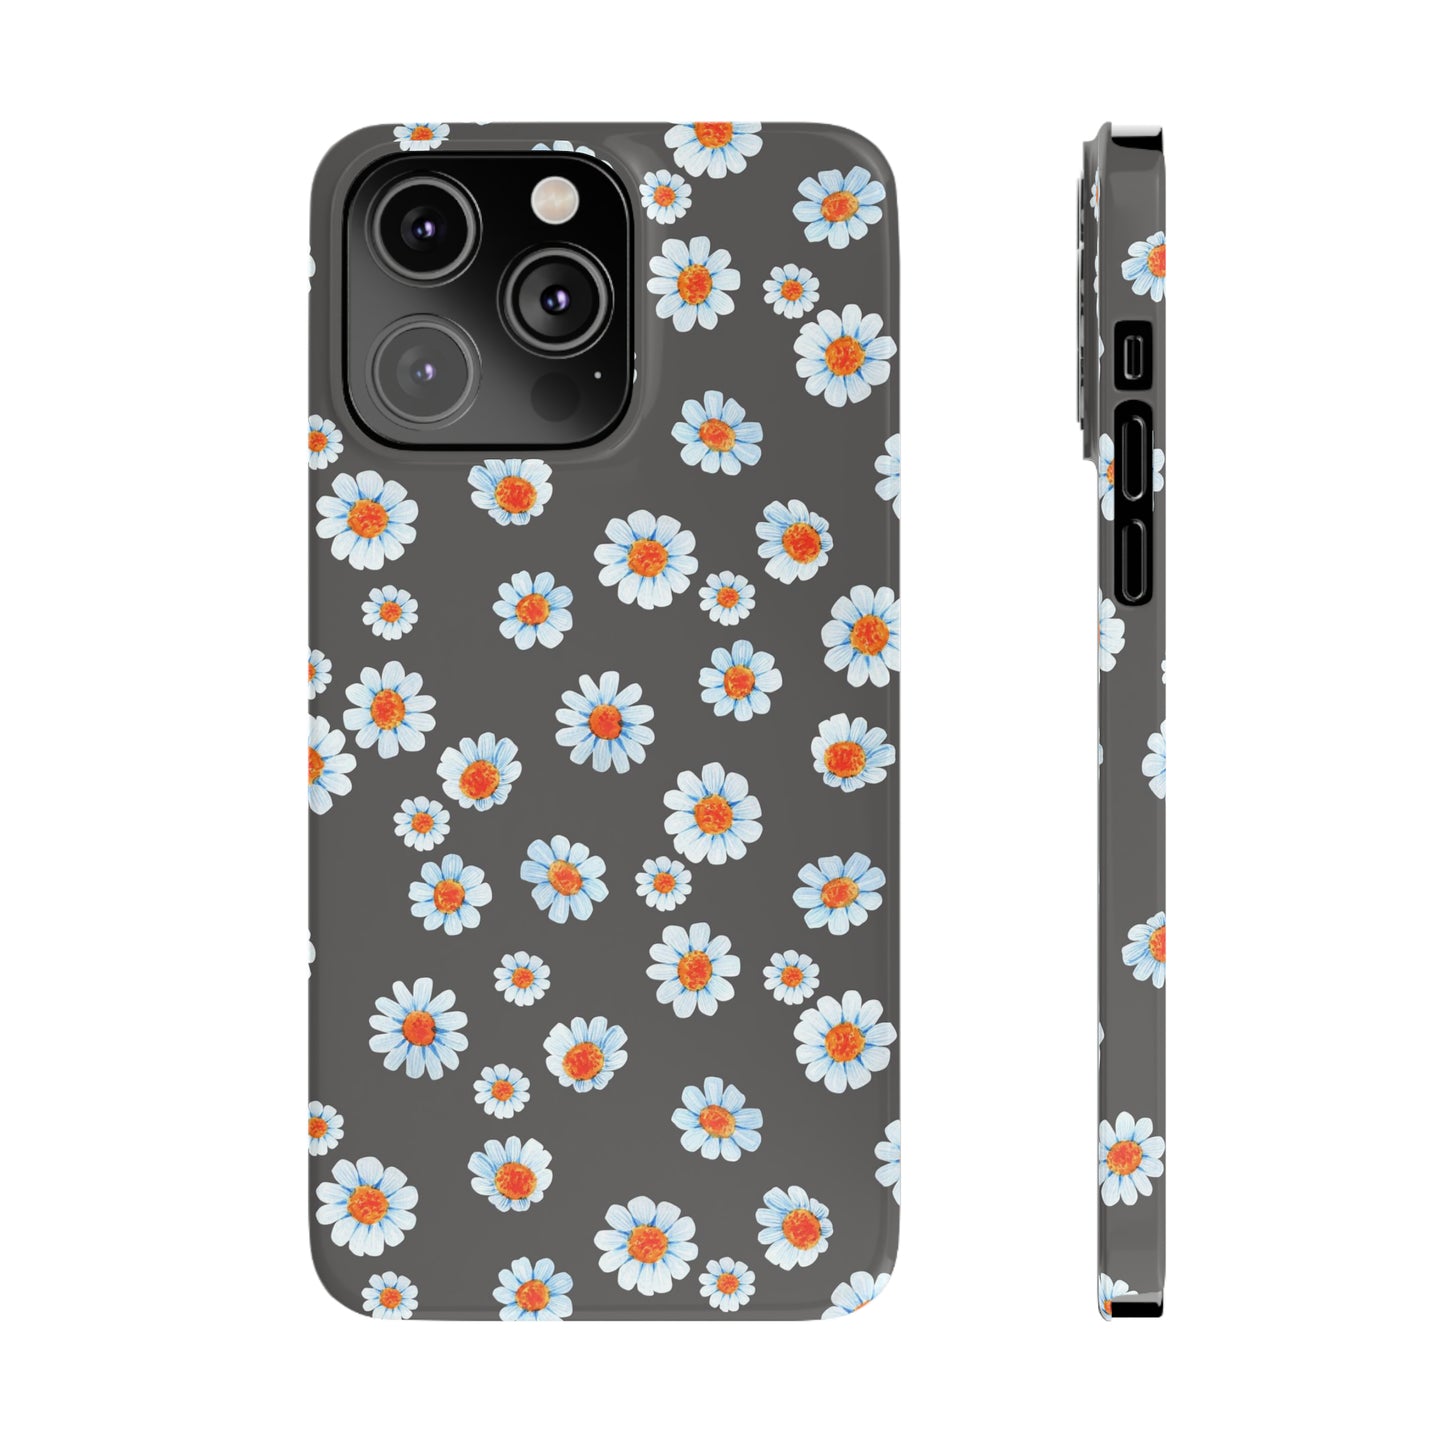 Black Marguerite iPhone case